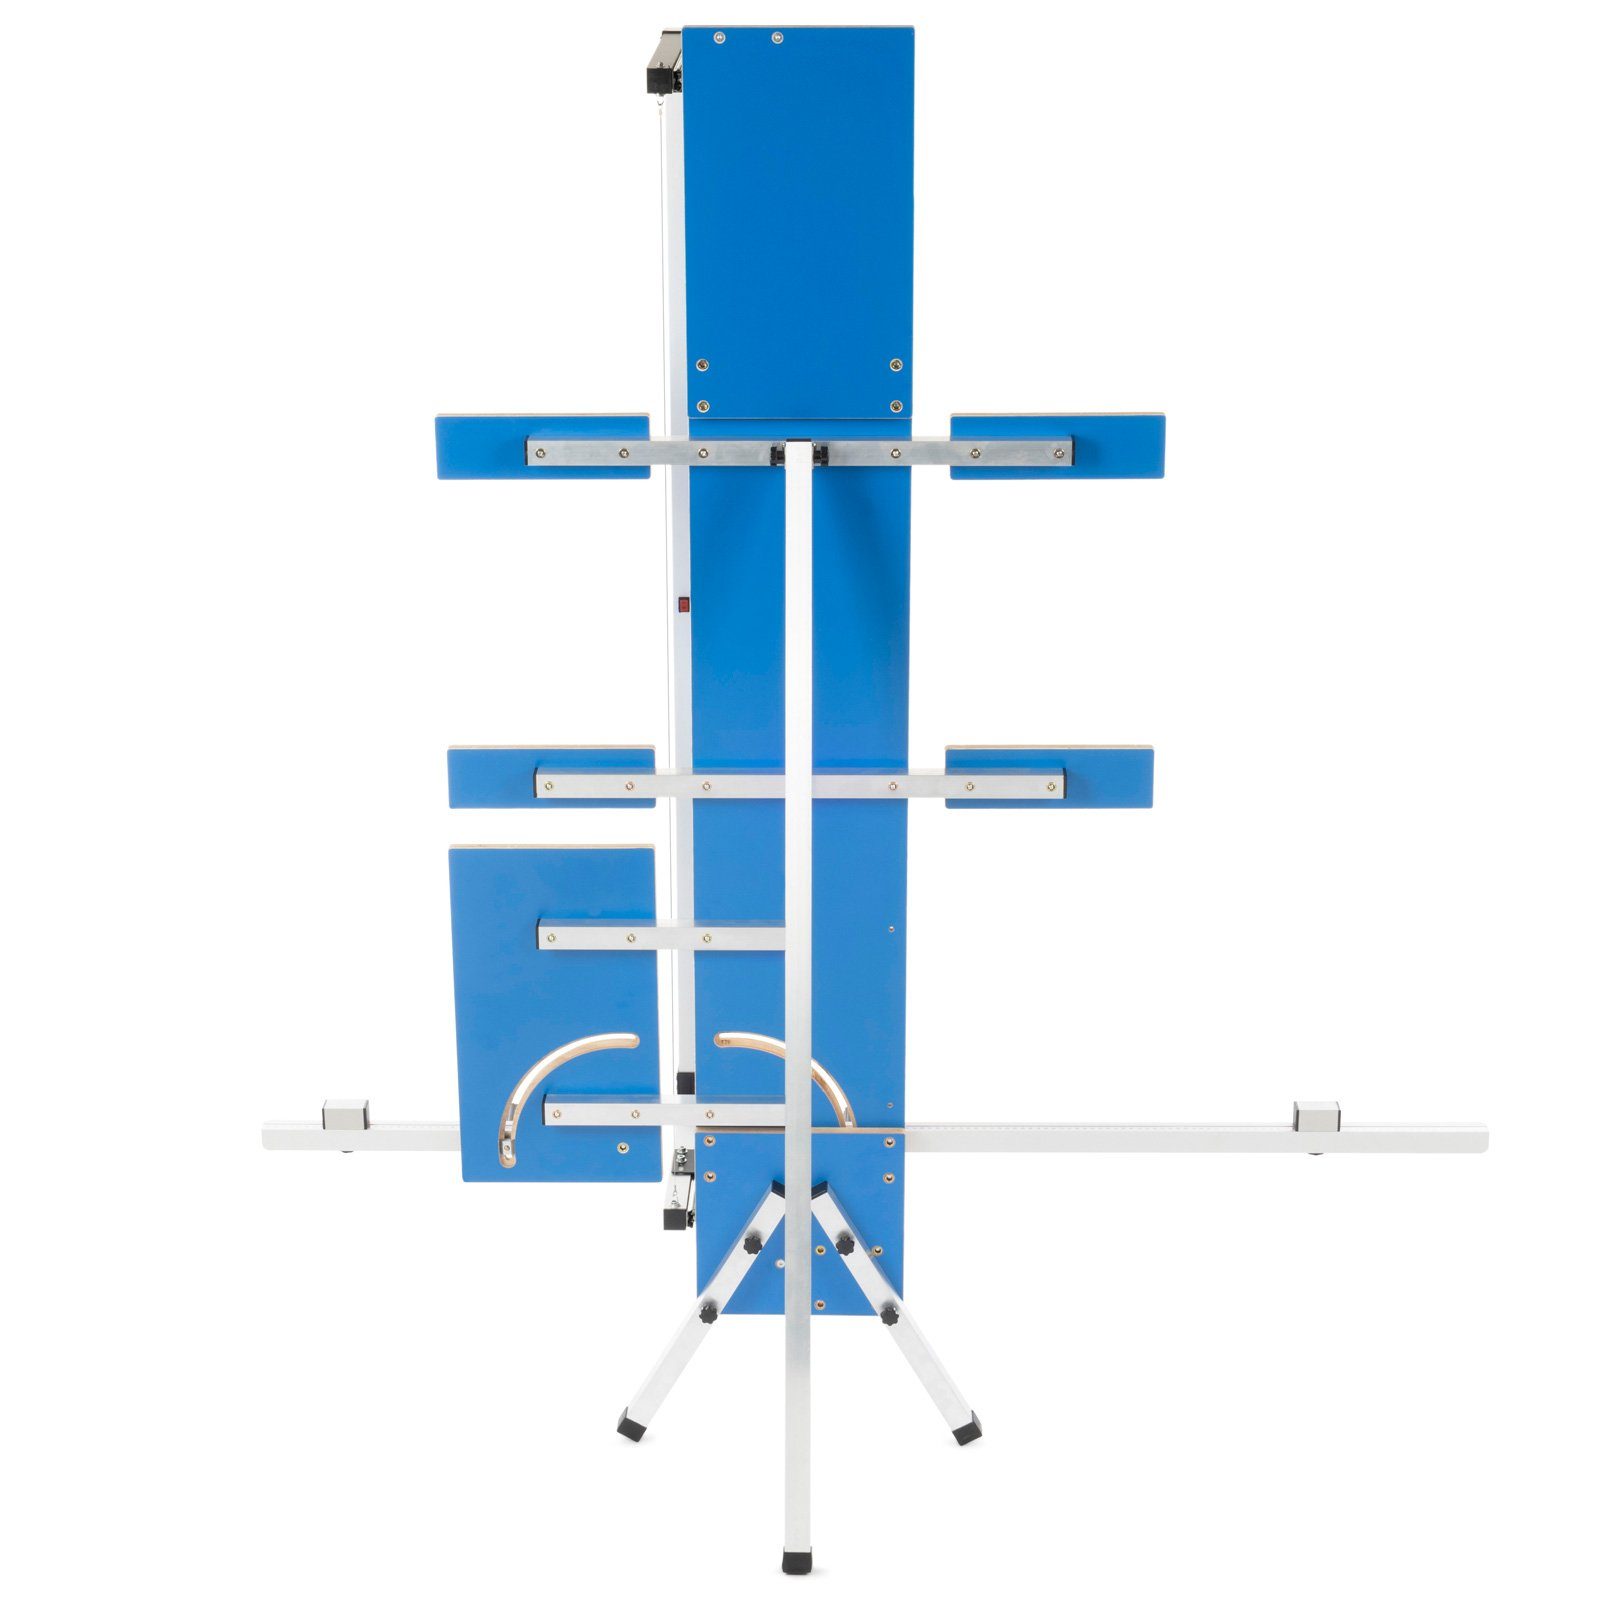 BAUTEC Heißdrahtschneider GAZELLE 6 » + » Styroporschneider, 10x Kombi-Set Schleifraspel Schneidedraht